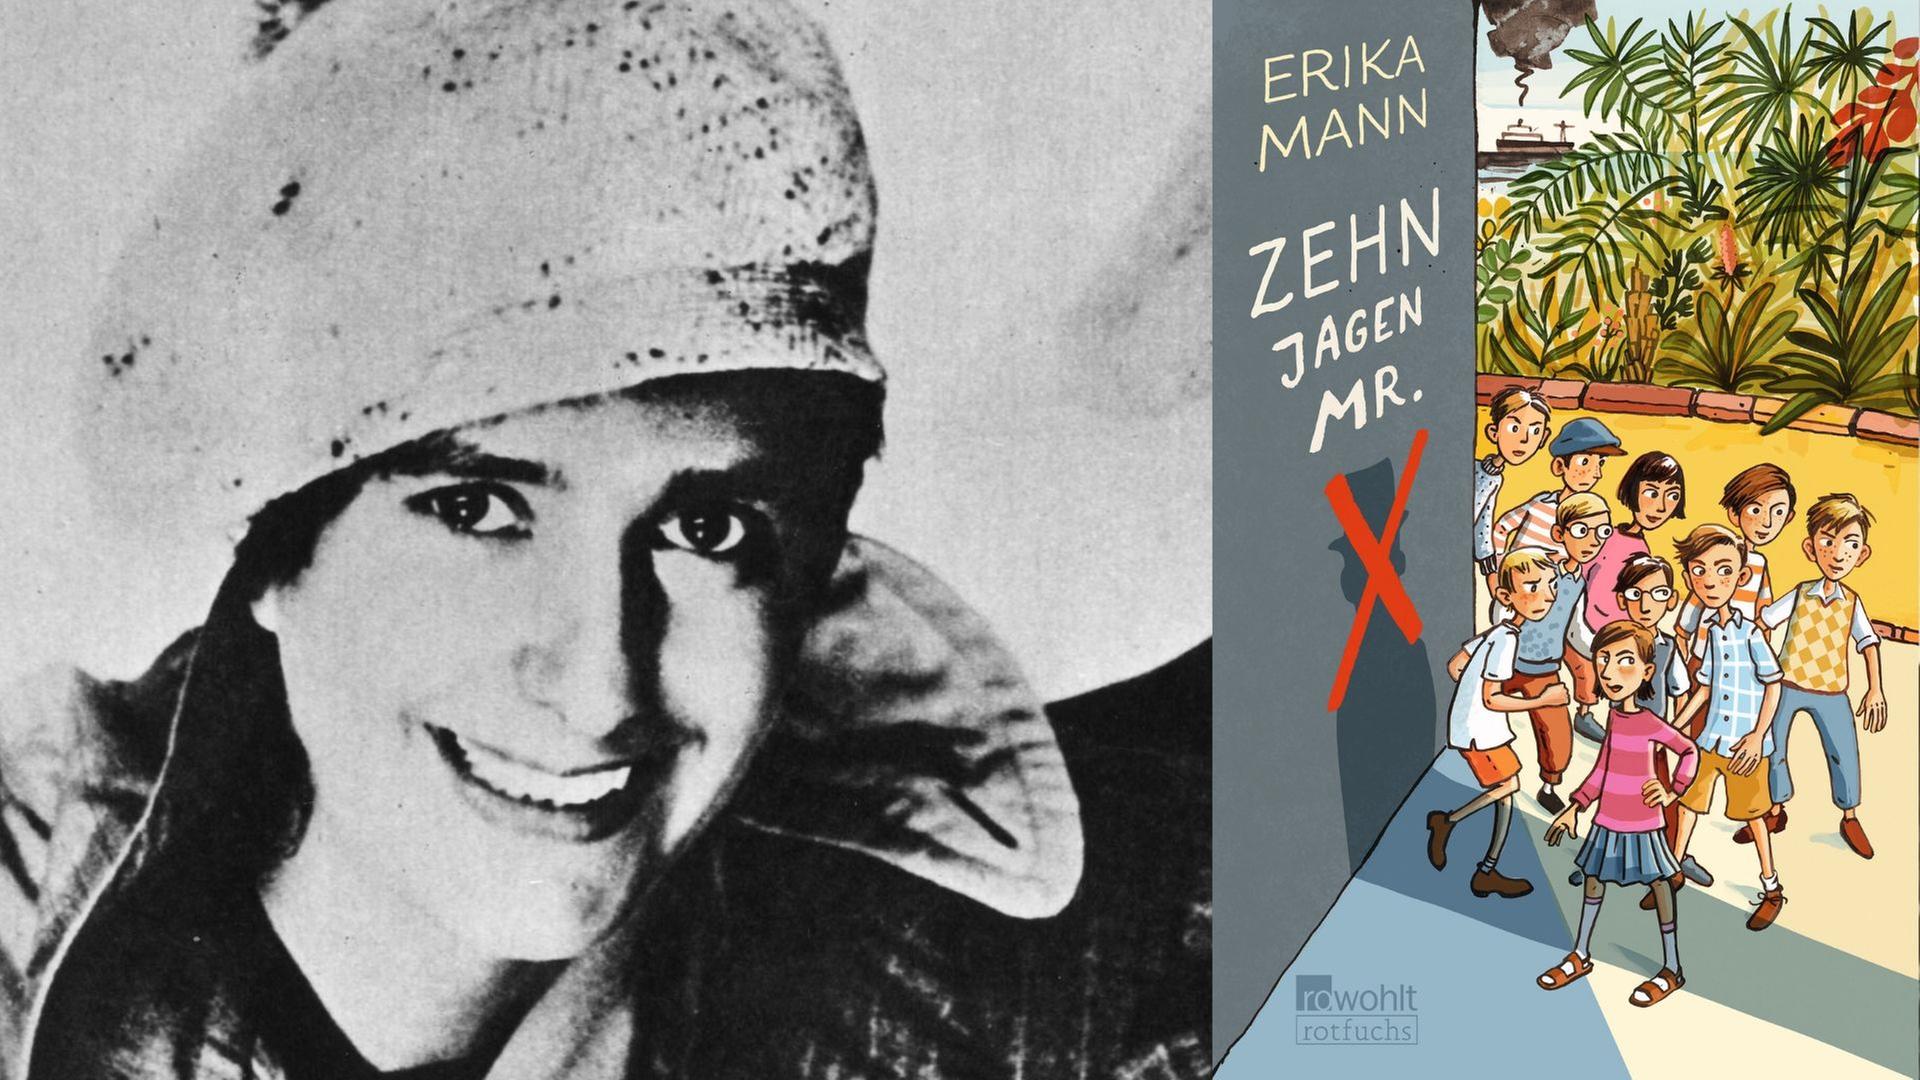 Erika Mann um 1930 und das Buchcover: Erika Mann: „Zehn jagen Mr. X“